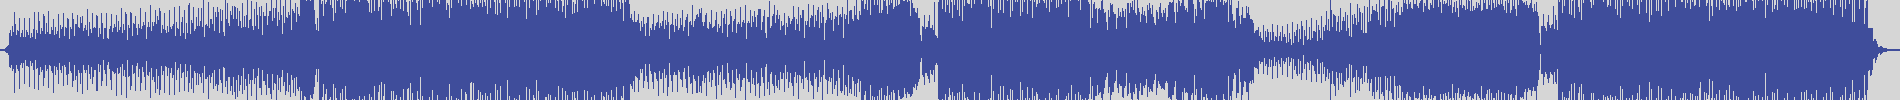 suxess [SX023A] Dyson Kellerman - Don't You Leave Me [Radio Edit] audio wave form